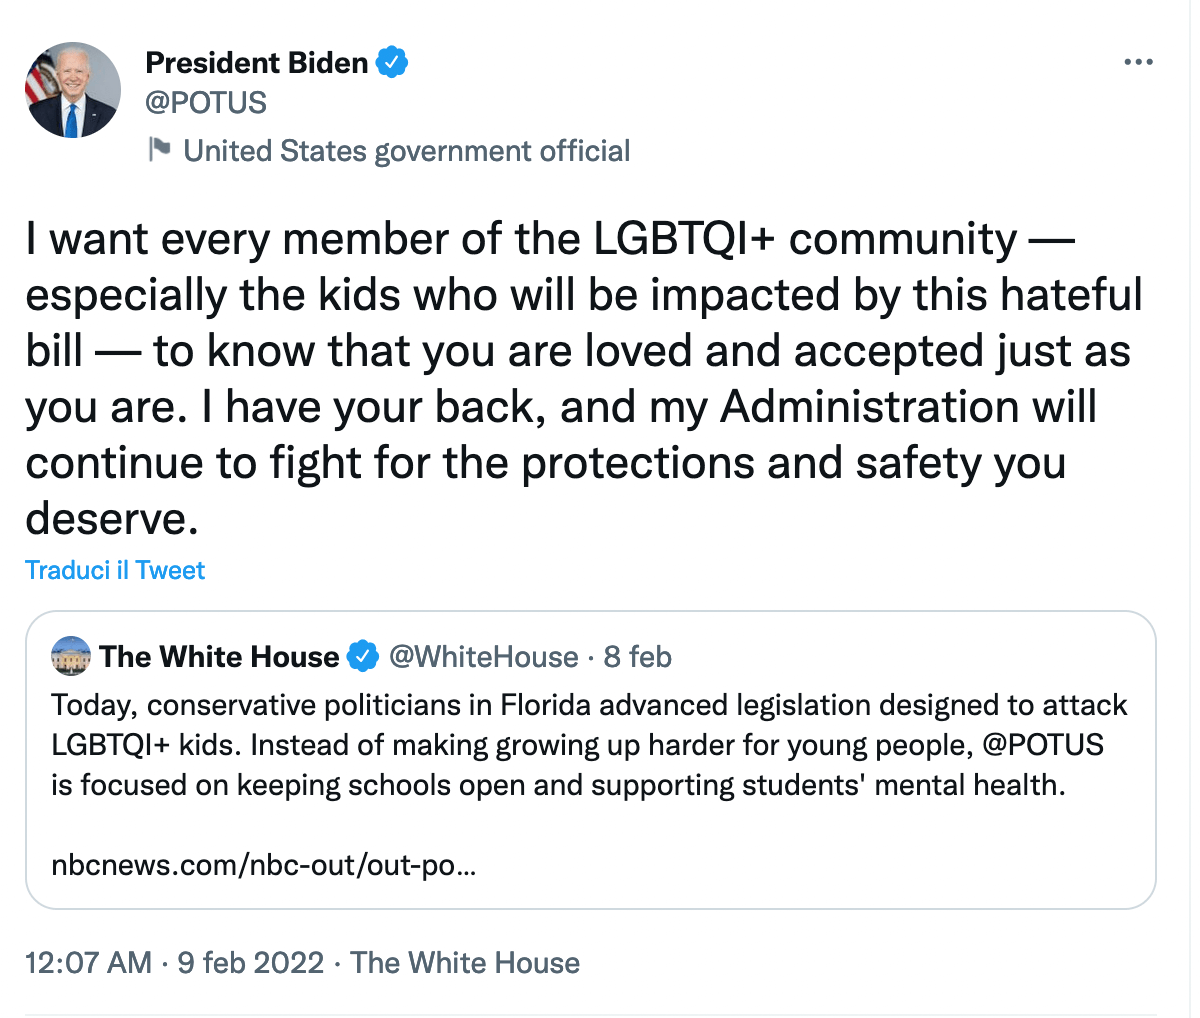 Joe Biden contro la legge omotransfobica della Florida: "Ai bimbi LGBTQ+ dico che siete amati e accettati" - Joe Biden - Gay.it